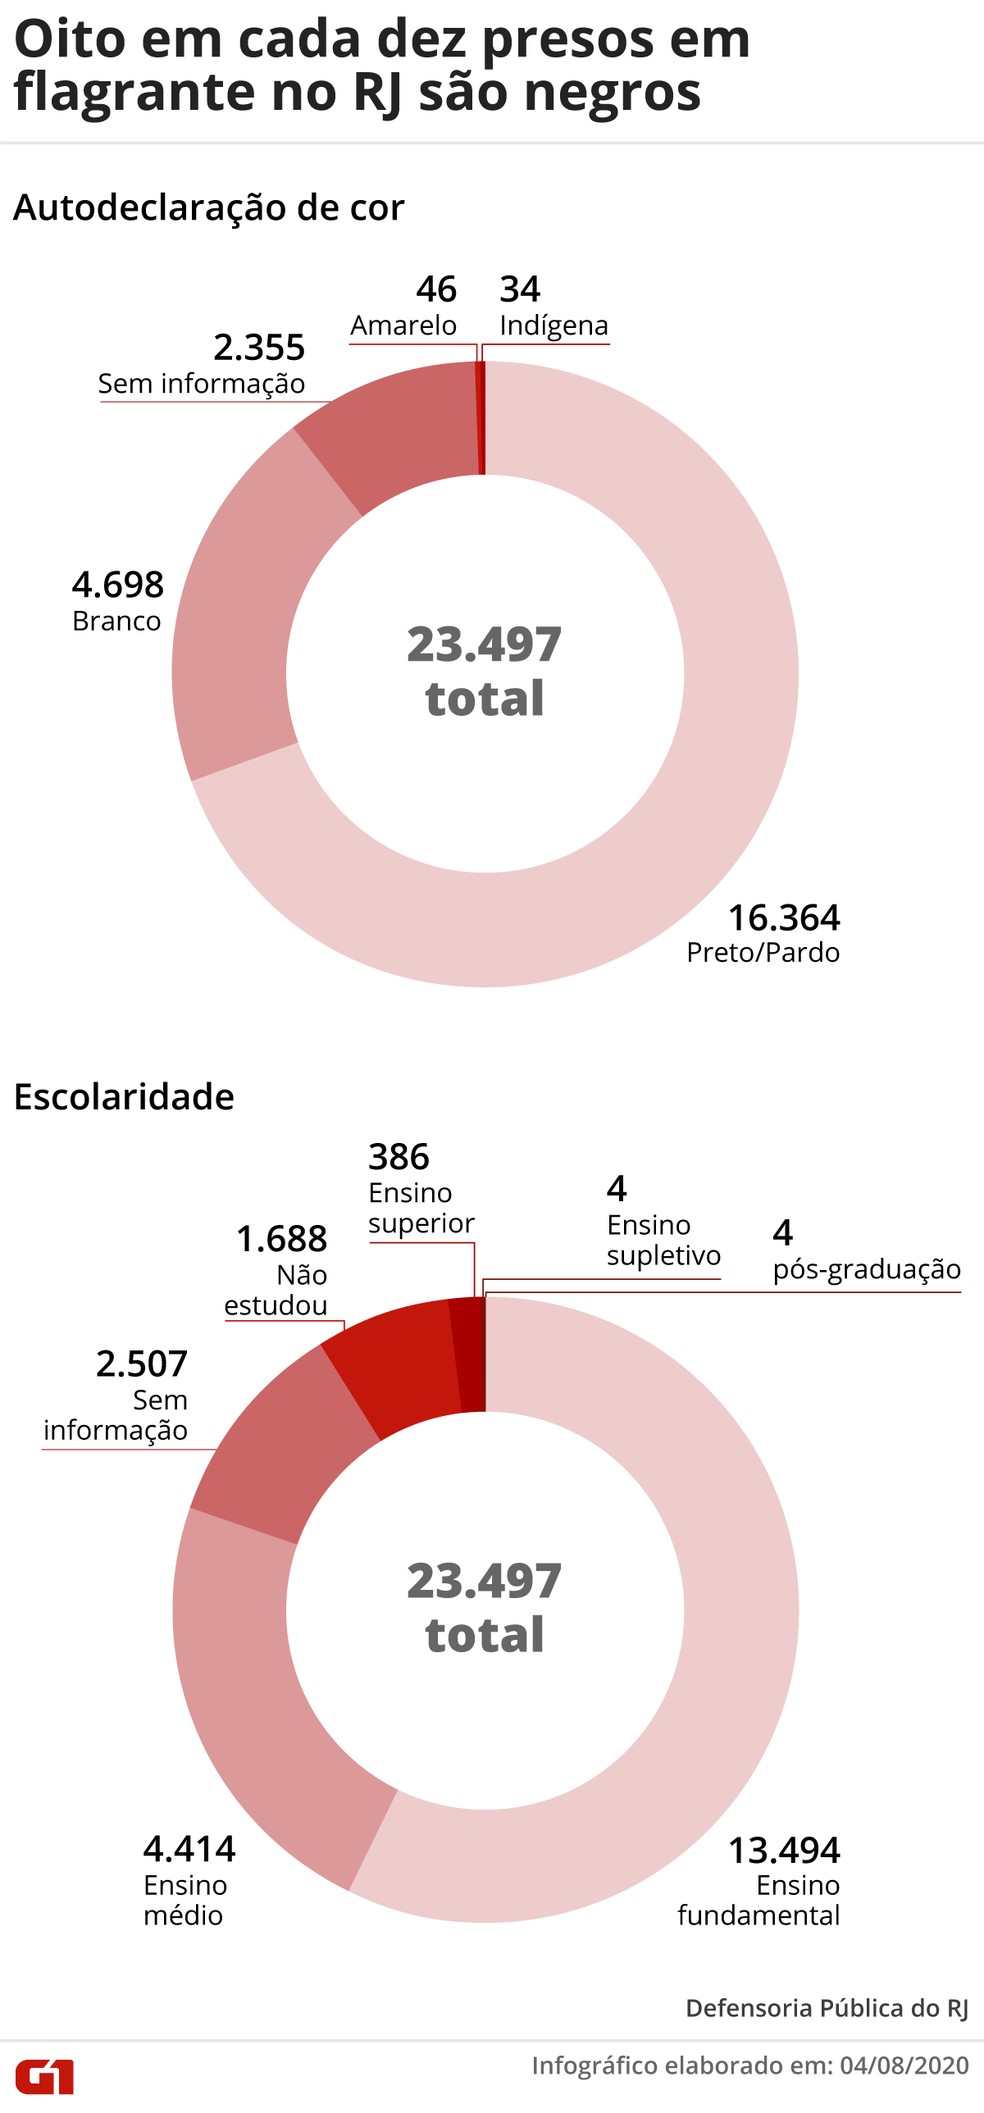 Defensoria Pblica realiza estudo que mostra desigualdades no Rio de Janeiro  Foto Infografia Wagner MagalhesG1